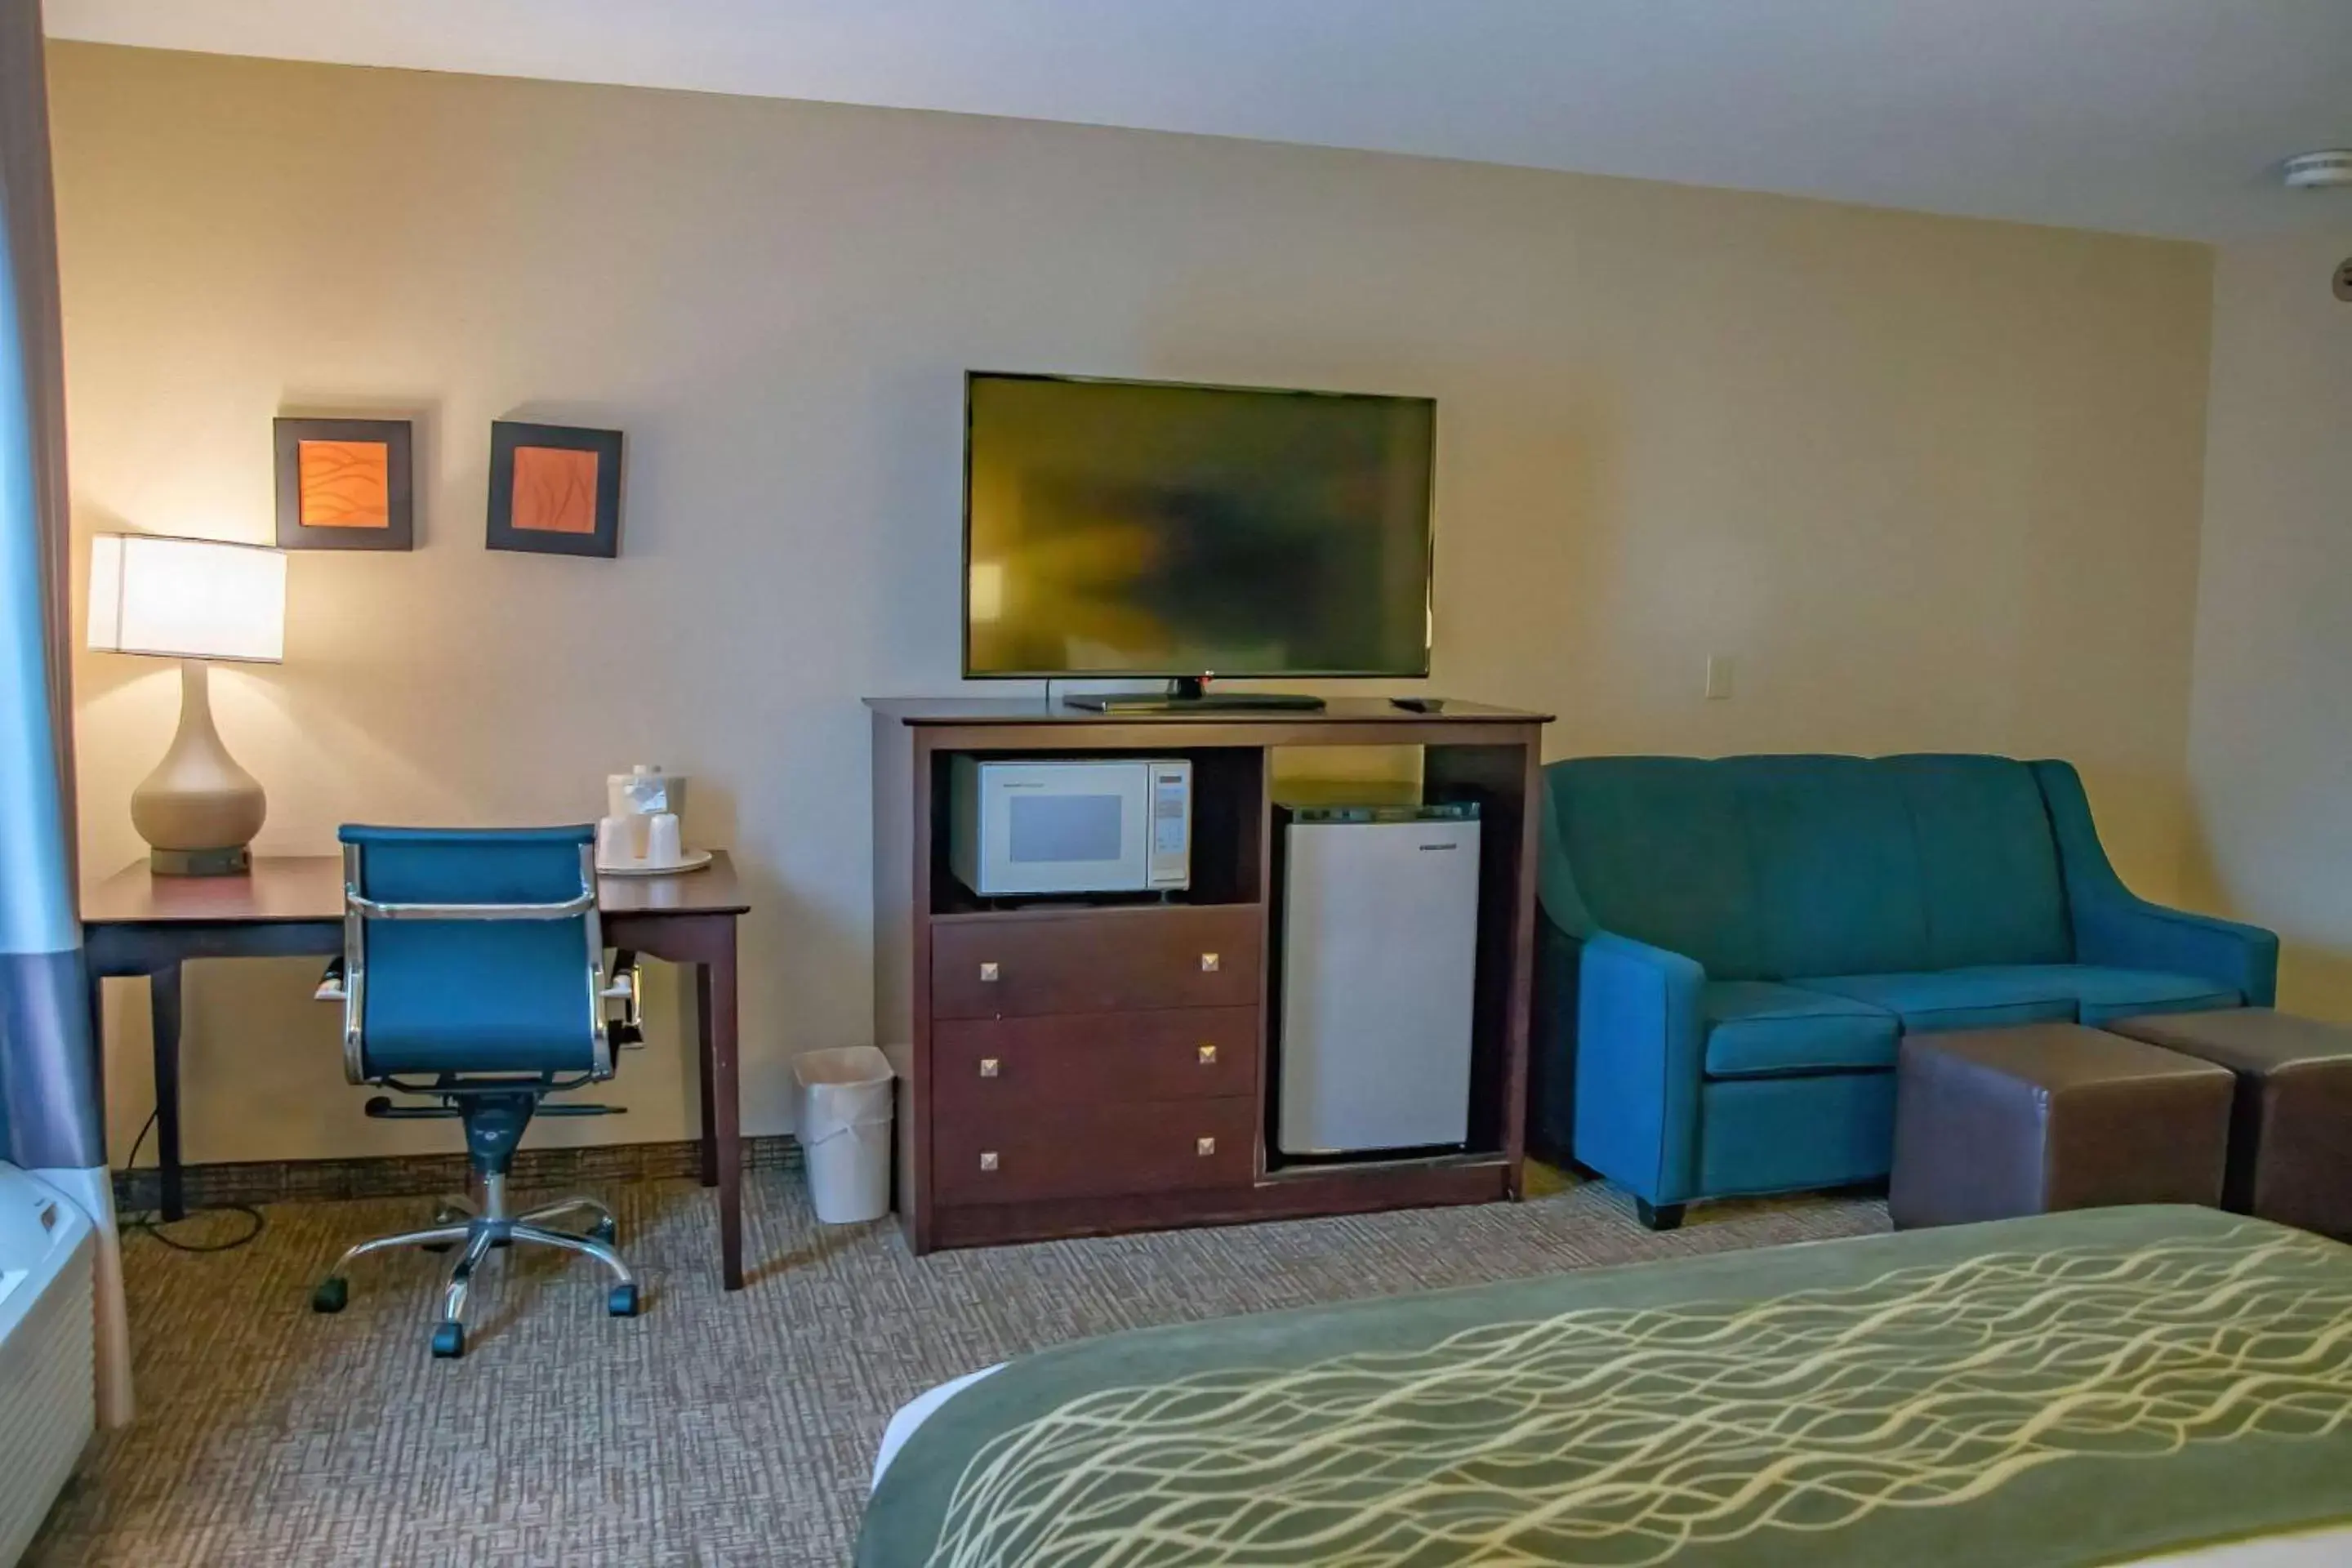 Bedroom, TV/Entertainment Center in Comfort Inn Huntington Near University